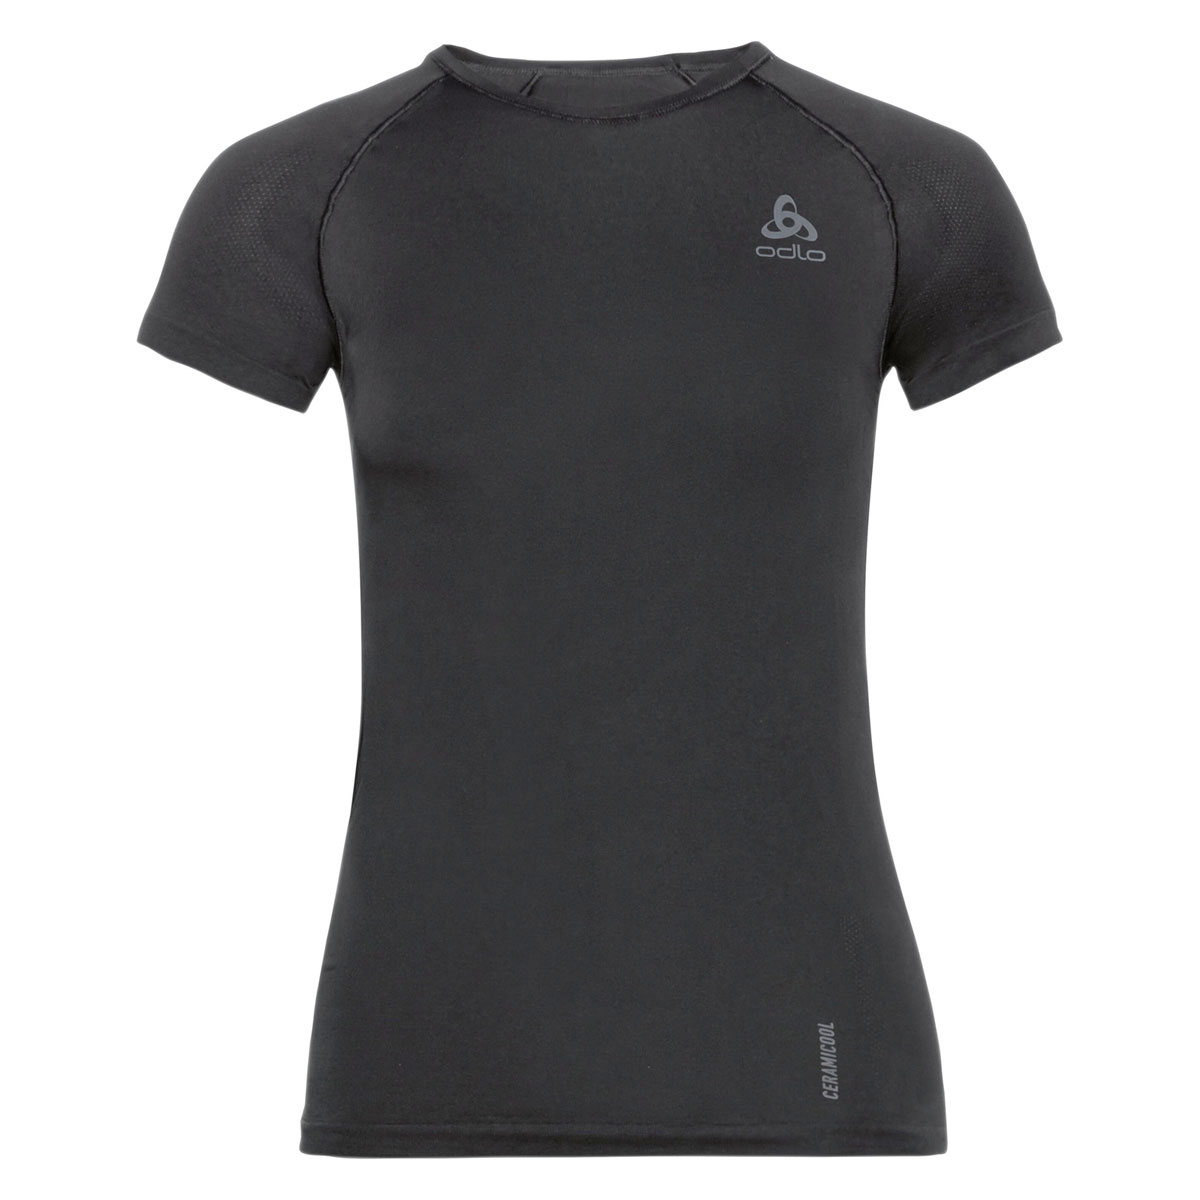 vragenlijst Regenboog natuurpark Odlo shirt korte mouw Performance X-Light Eco kopen – Dames Zwart